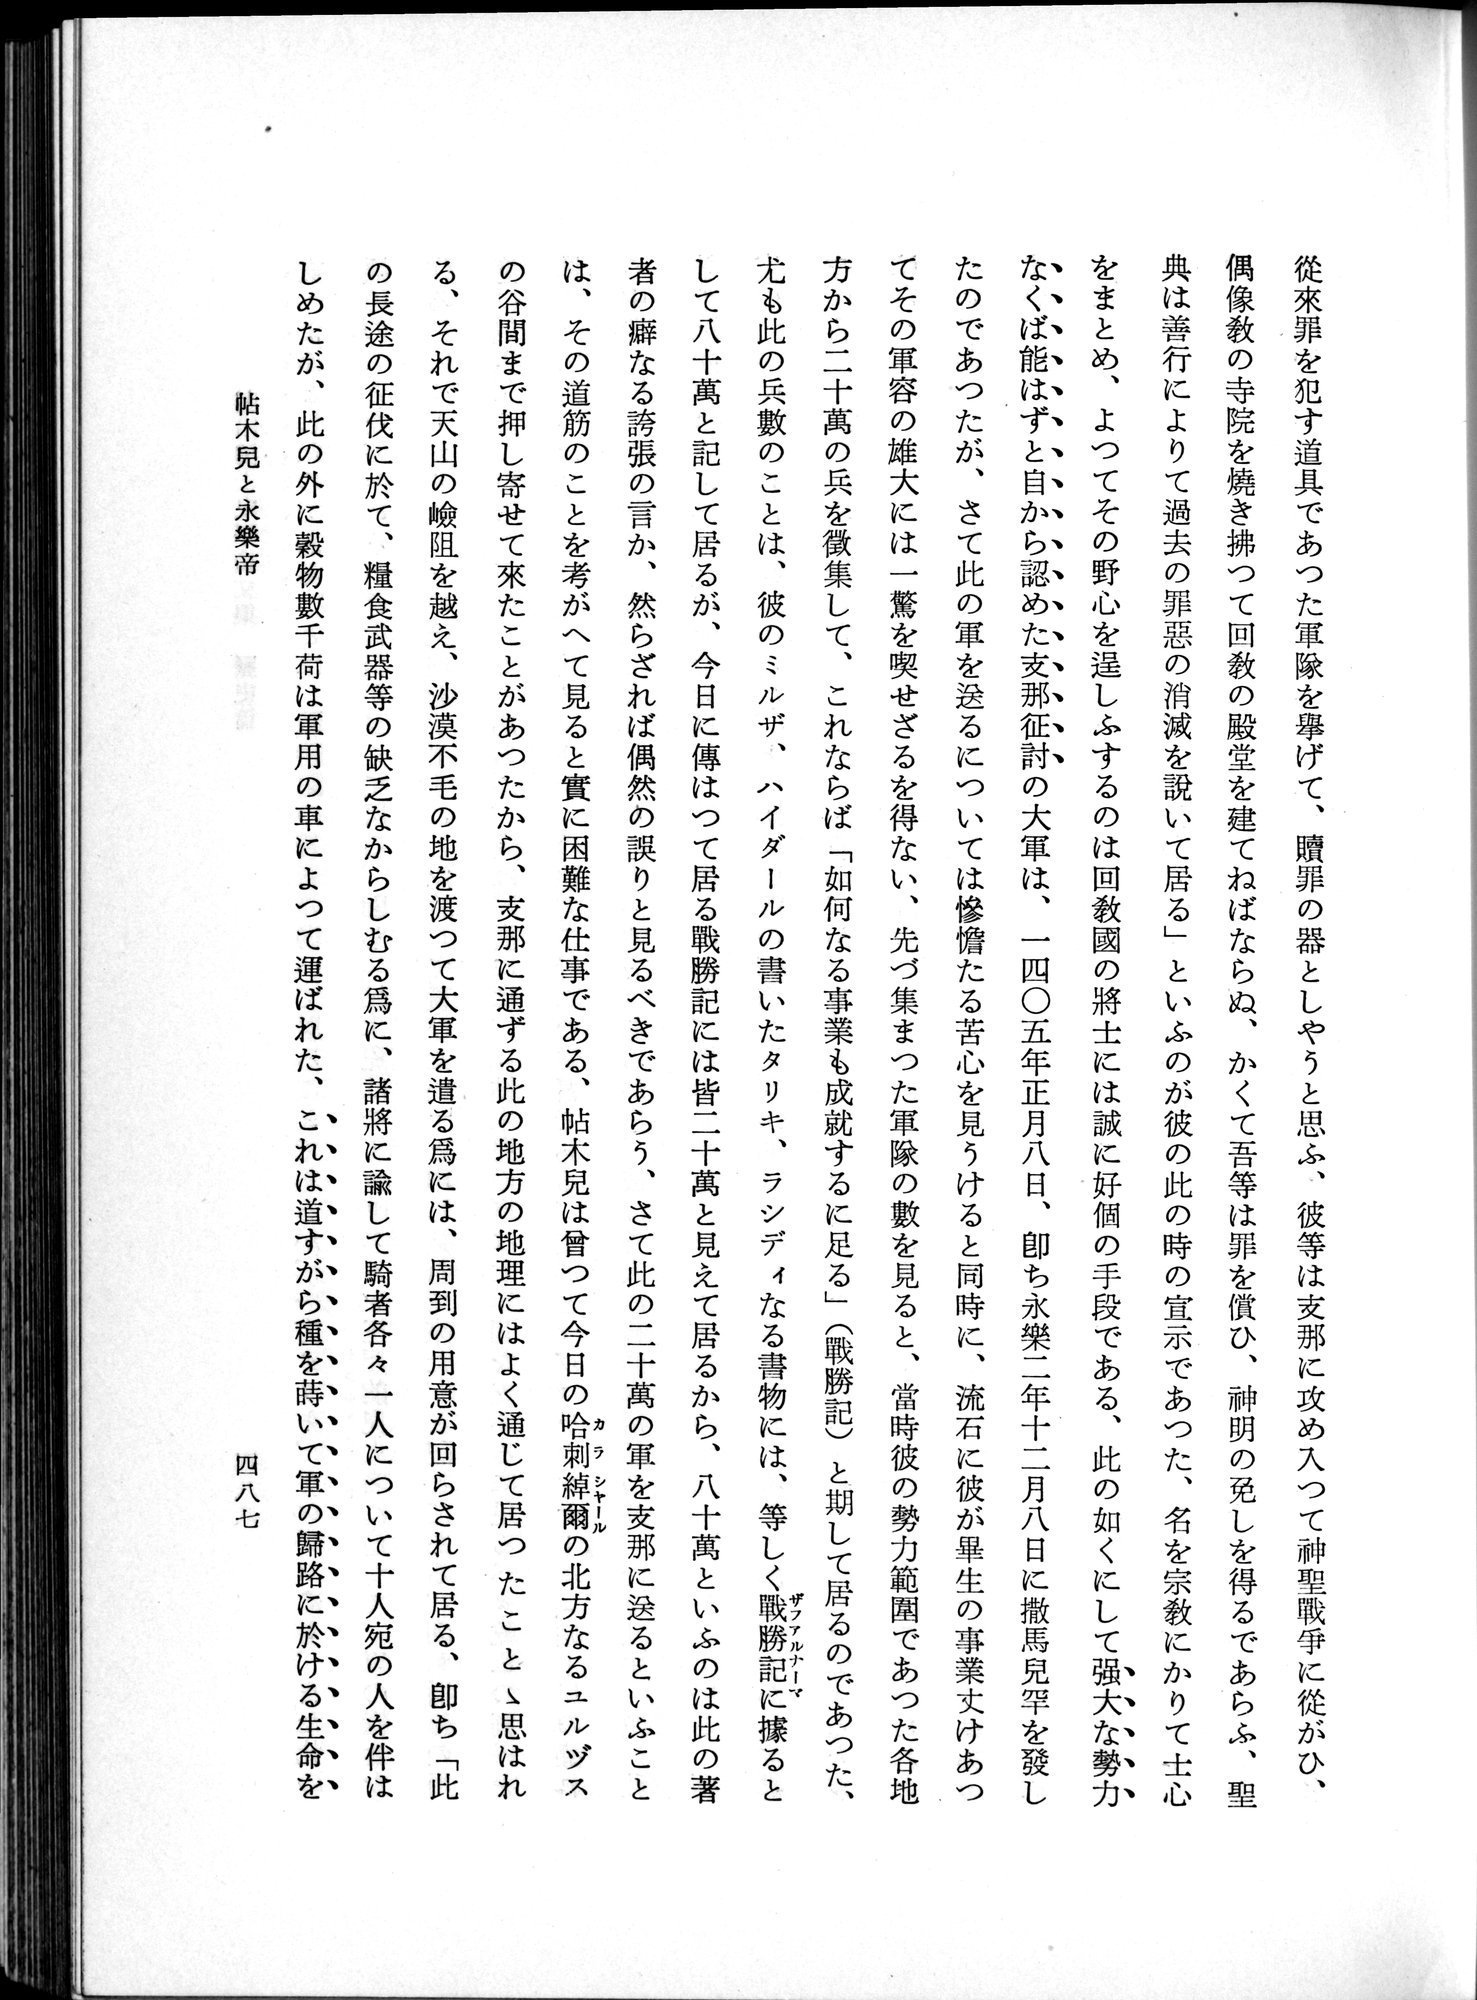 羽田博士史学論文集 : vol.1 / Page 525 (Grayscale High Resolution Image)